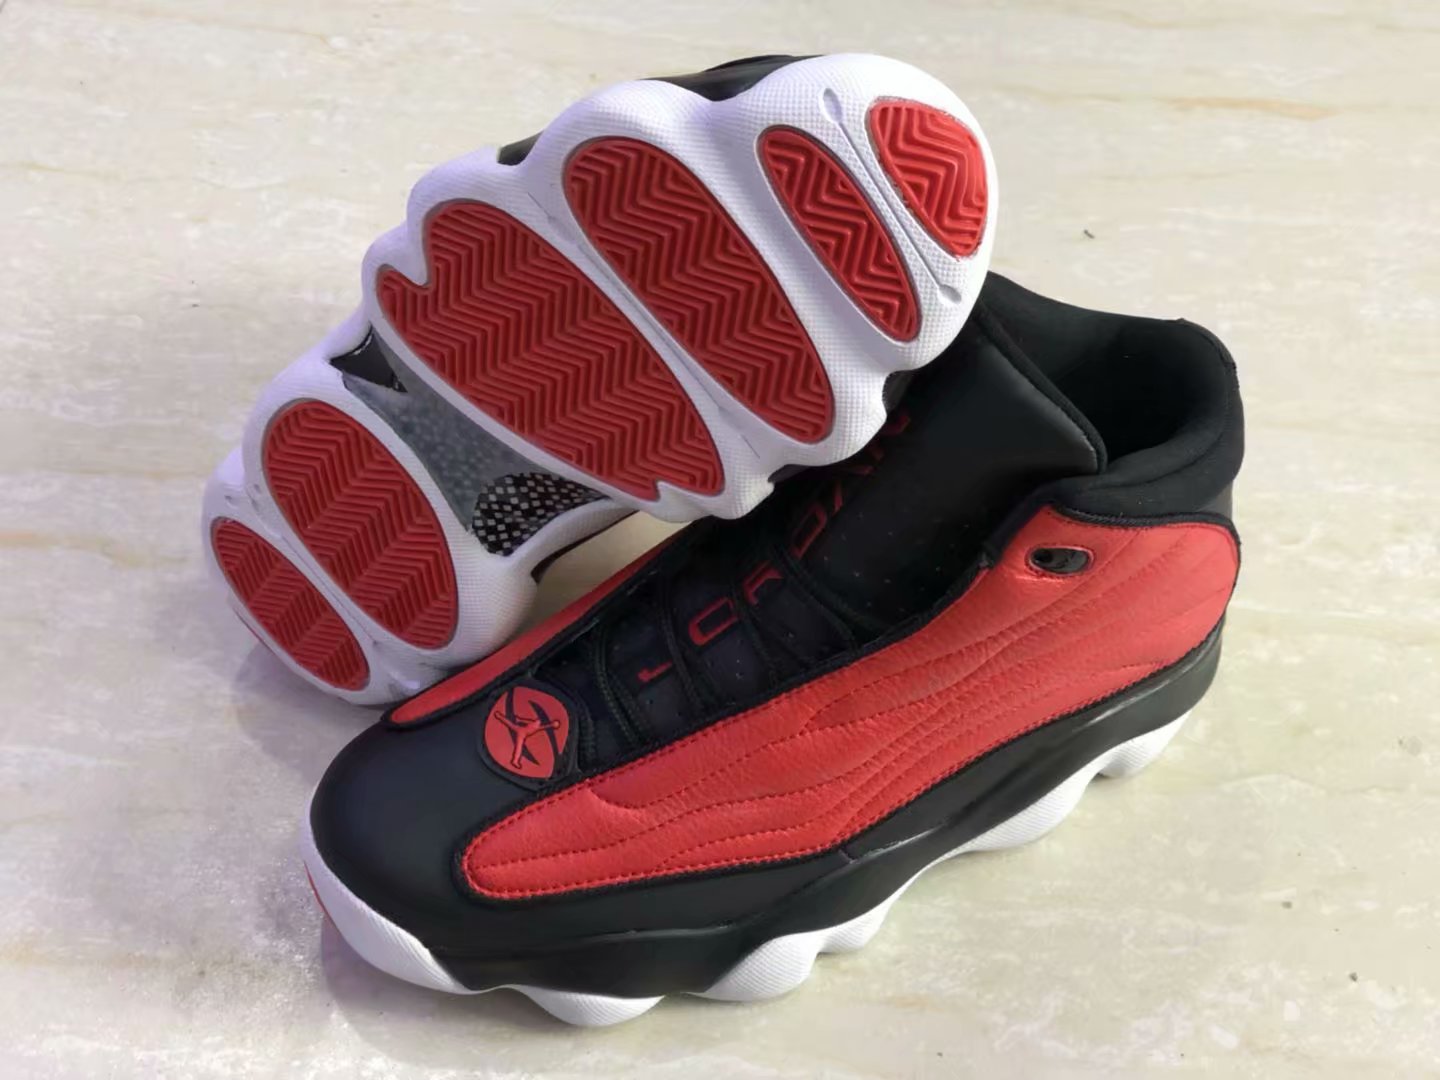 New Air Jordan 13.5 Red Black Shoes